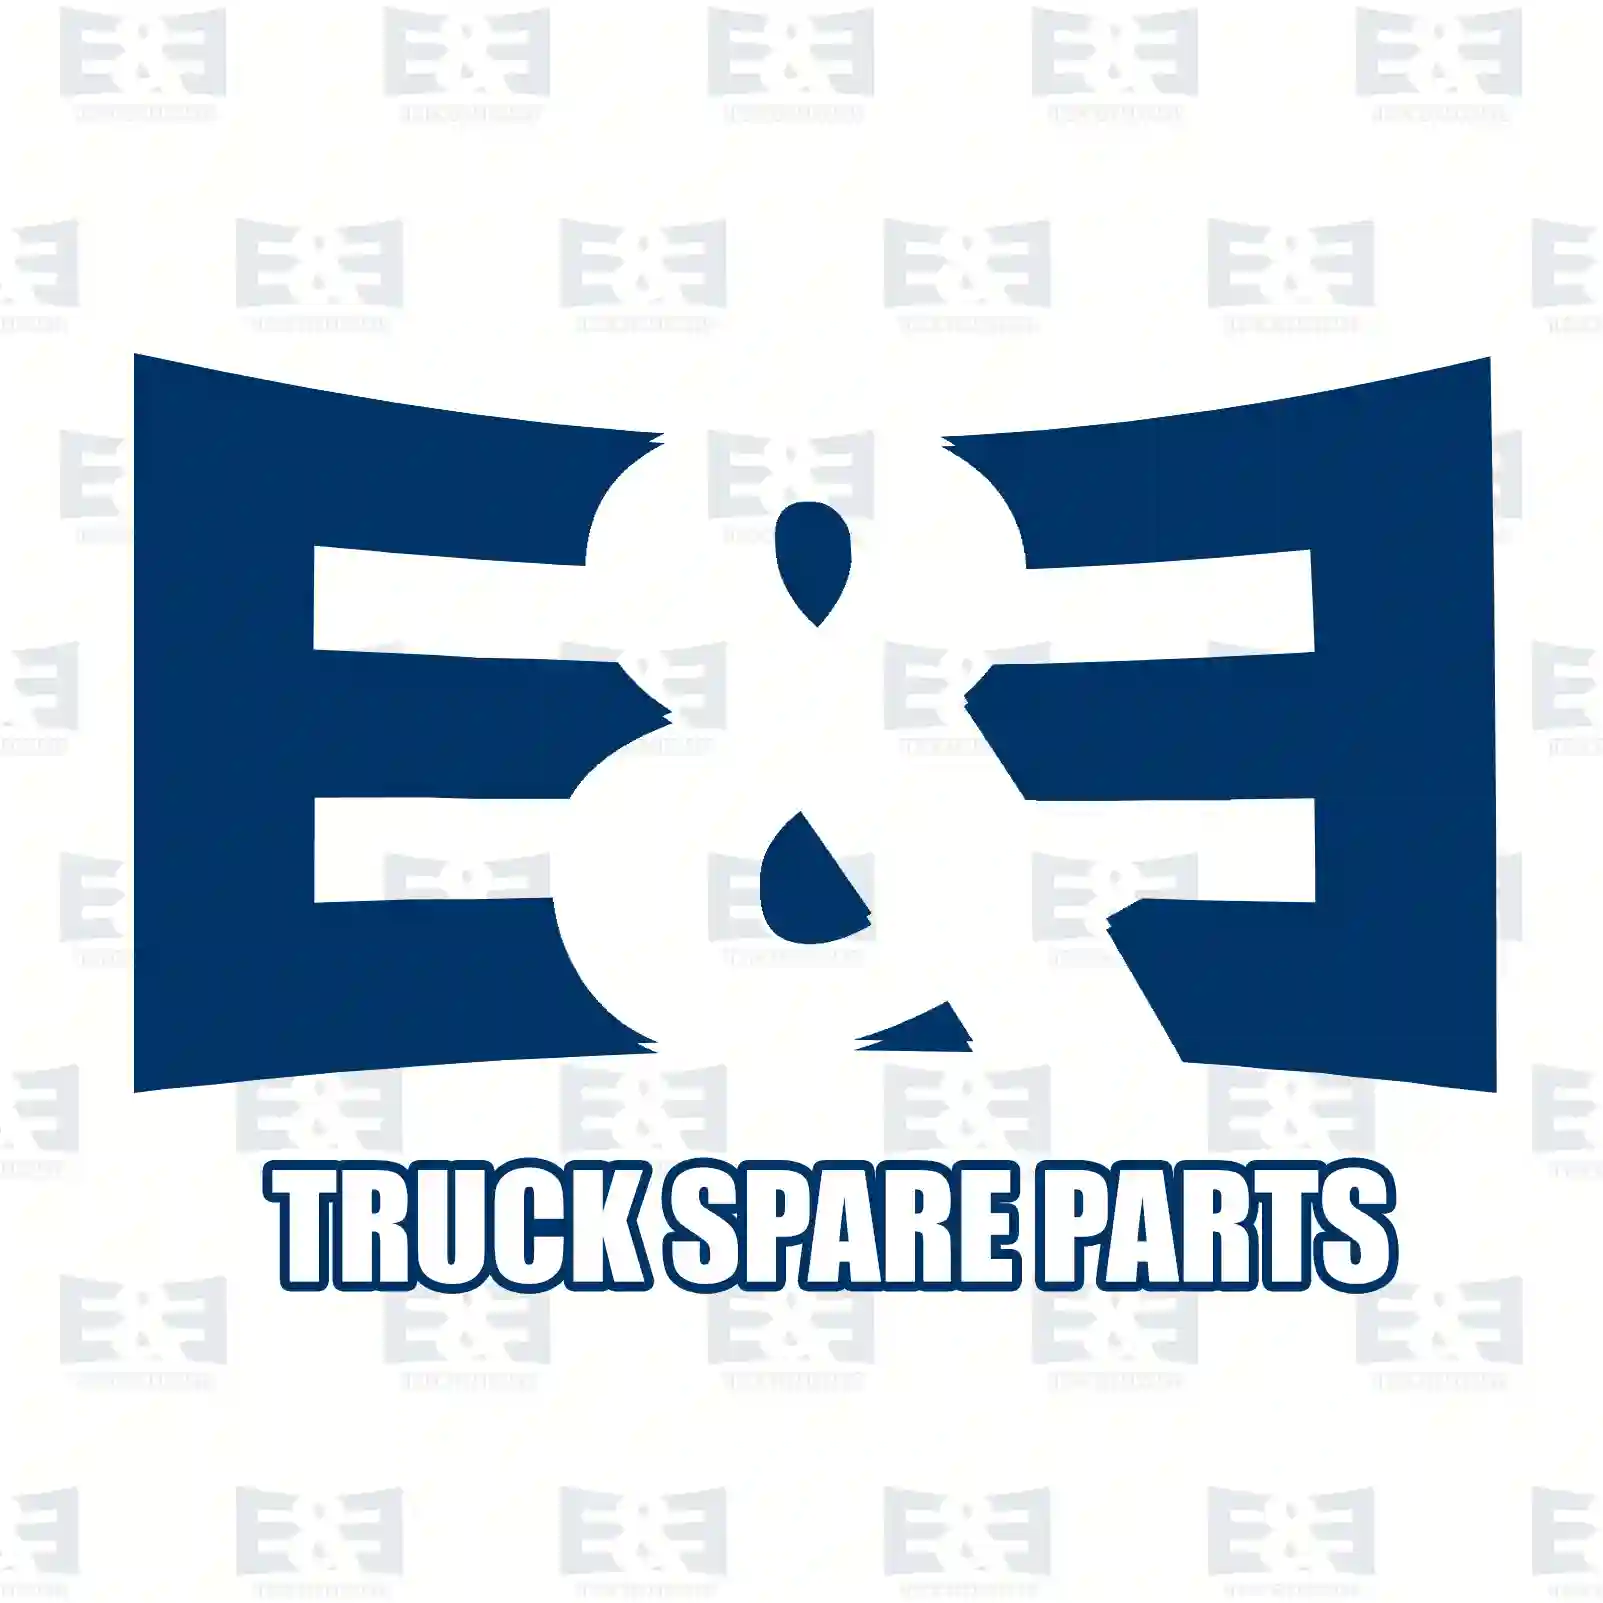 Clutch disc, 2E2288832, 1878001216, 20366269, 20507761, 85000469 ||  2E2288832 E&E Truck Spare Parts | Truck Spare Parts, Auotomotive Spare Parts Clutch disc, 2E2288832, 1878001216, 20366269, 20507761, 85000469 ||  2E2288832 E&E Truck Spare Parts | Truck Spare Parts, Auotomotive Spare Parts